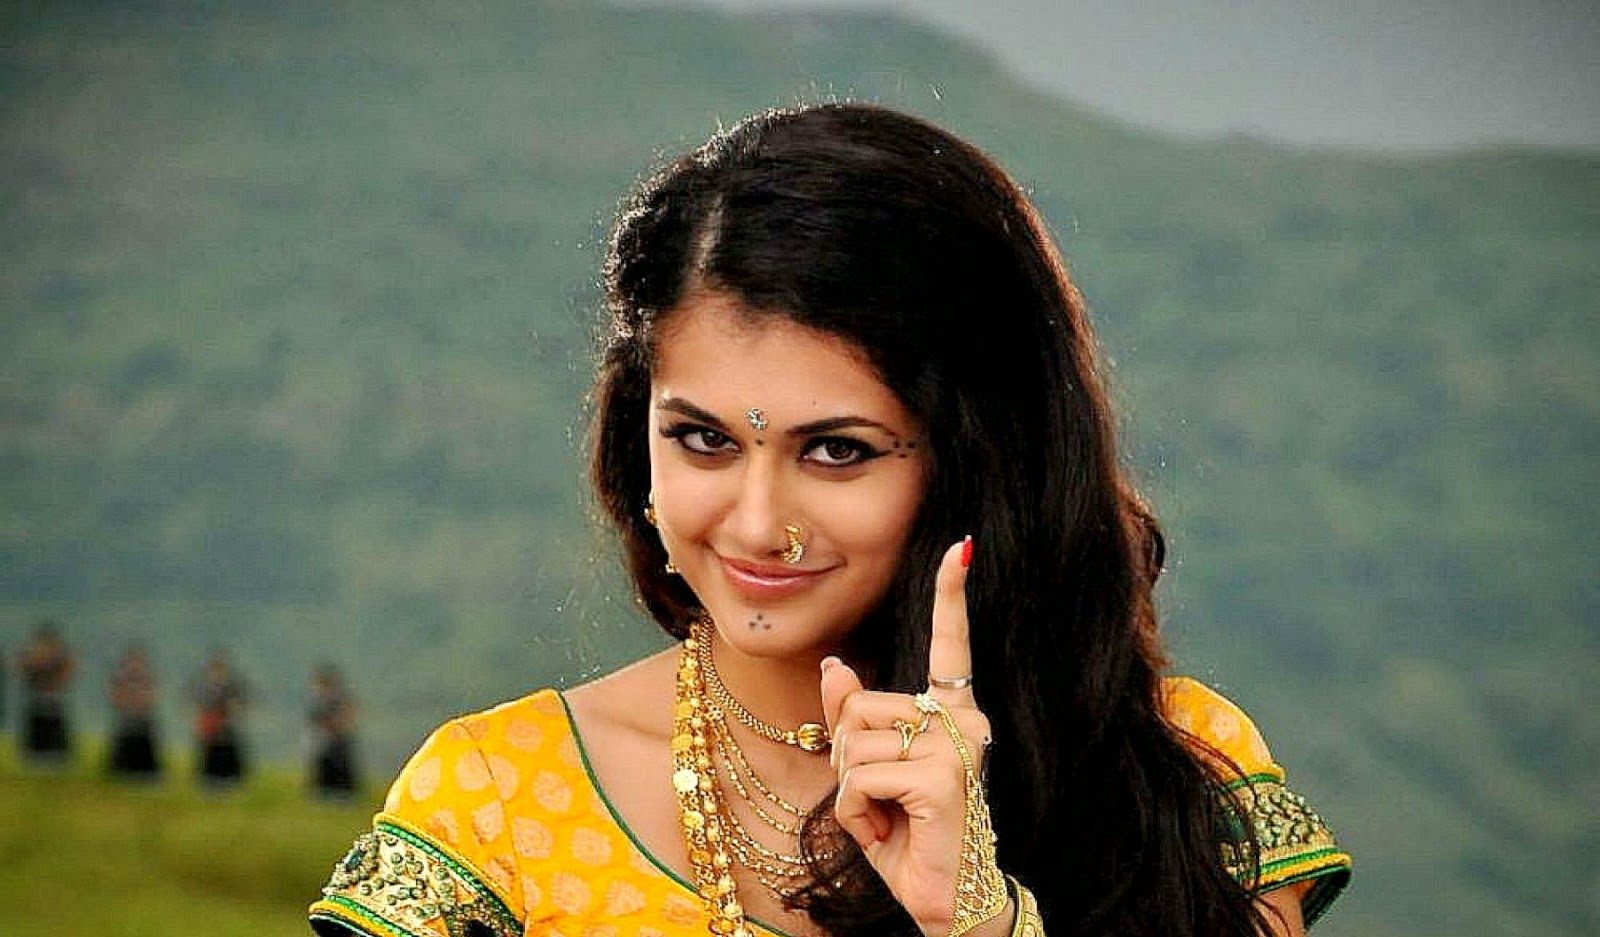 fond d'écran hd actrice tamoule,sourire,la photographie,cheveux noirs,séance photo,heureux